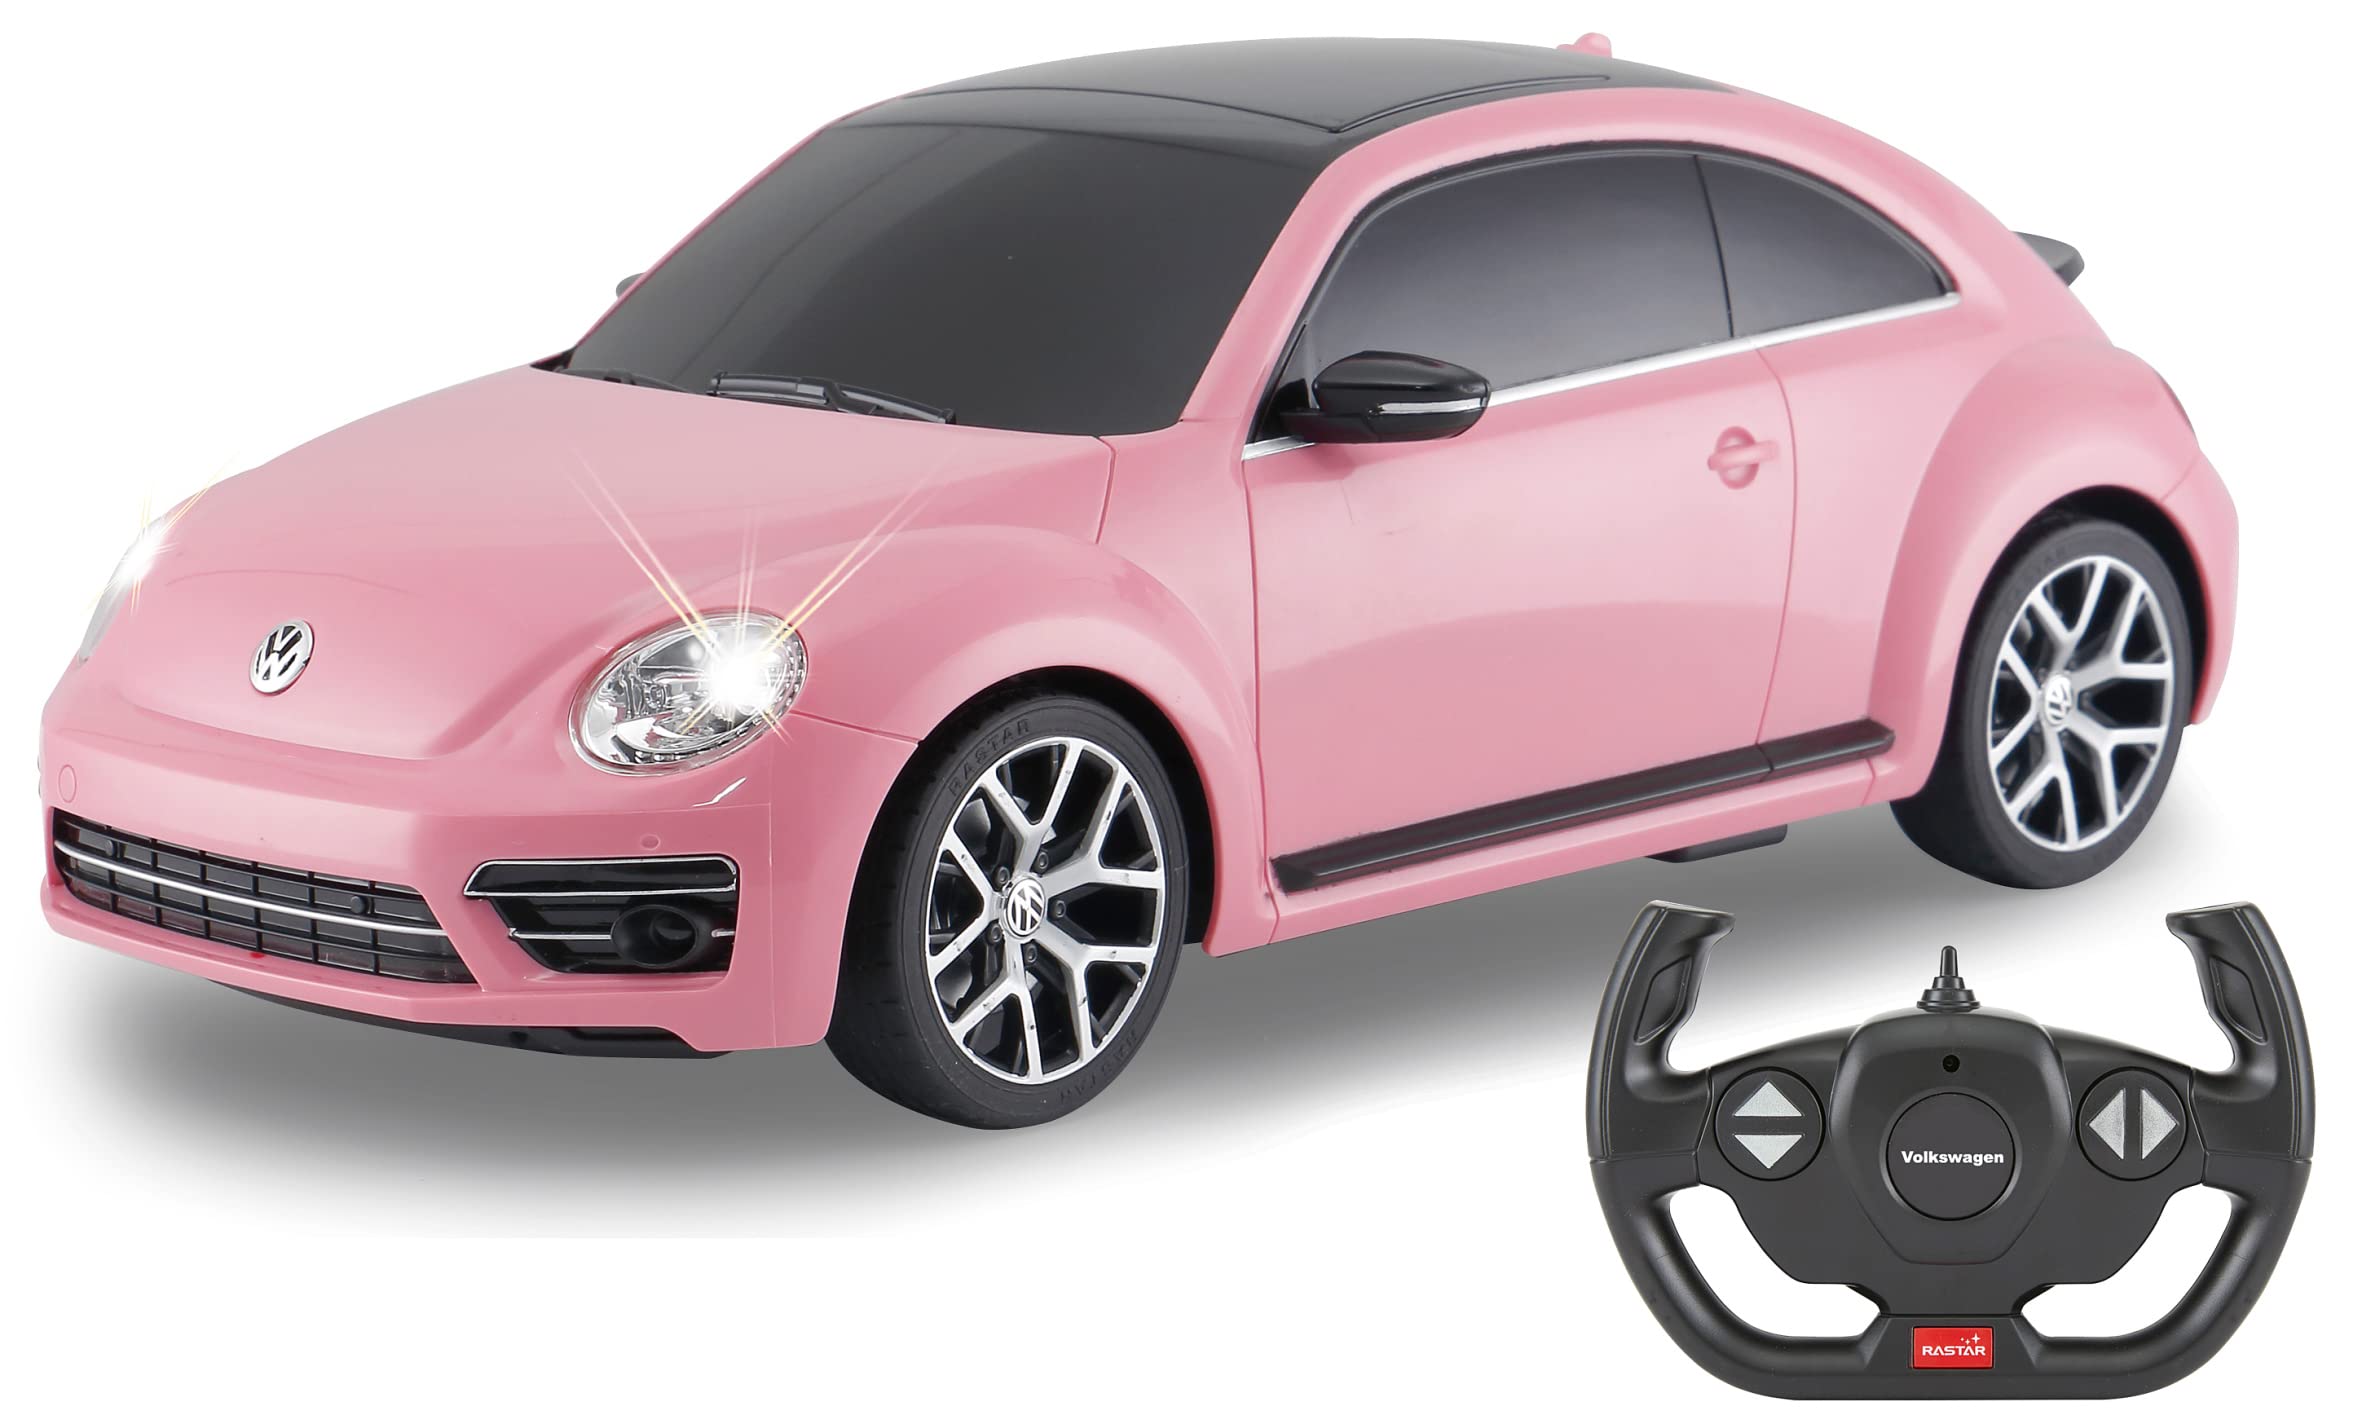 JAMARA 402113 VW Beetle 1:14 2,4GHz-offiziell lizenziert, originalgetreue Lackierung, LED Licht vorne/hinten, ferngesteuertes RC Auto, pink